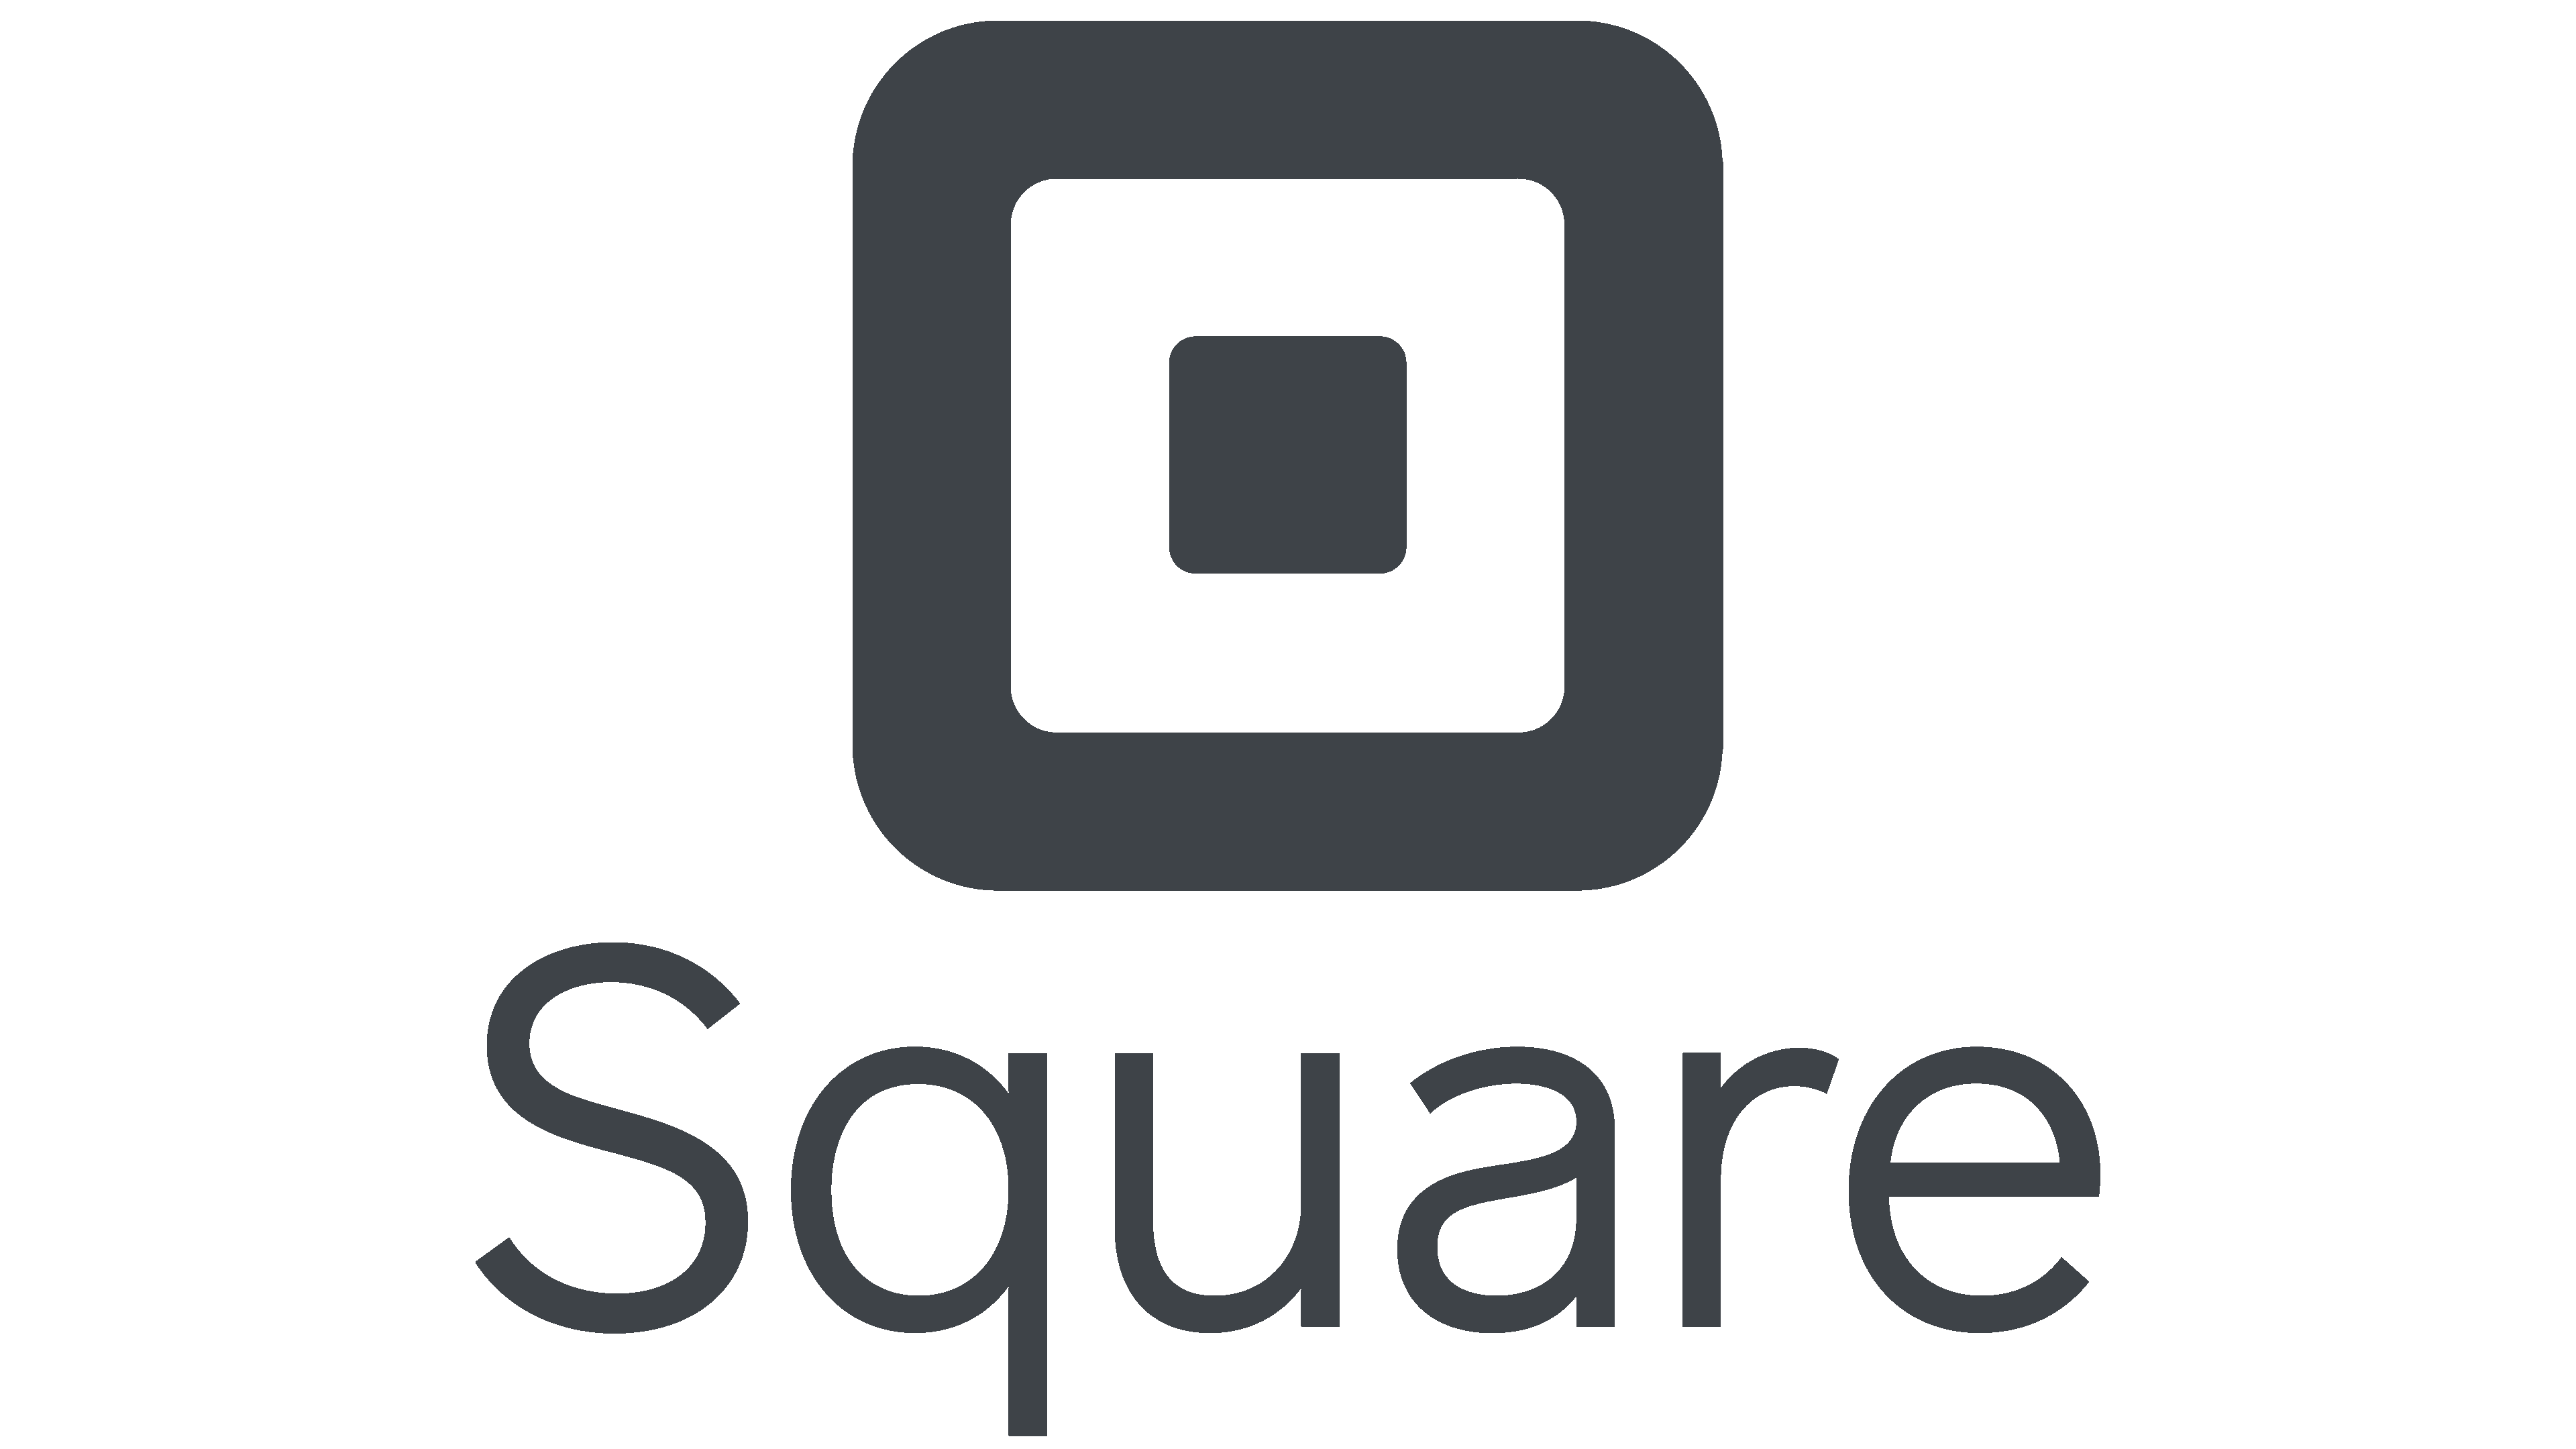 square loans 2022, Square Capital, Square logo. square loans reviews